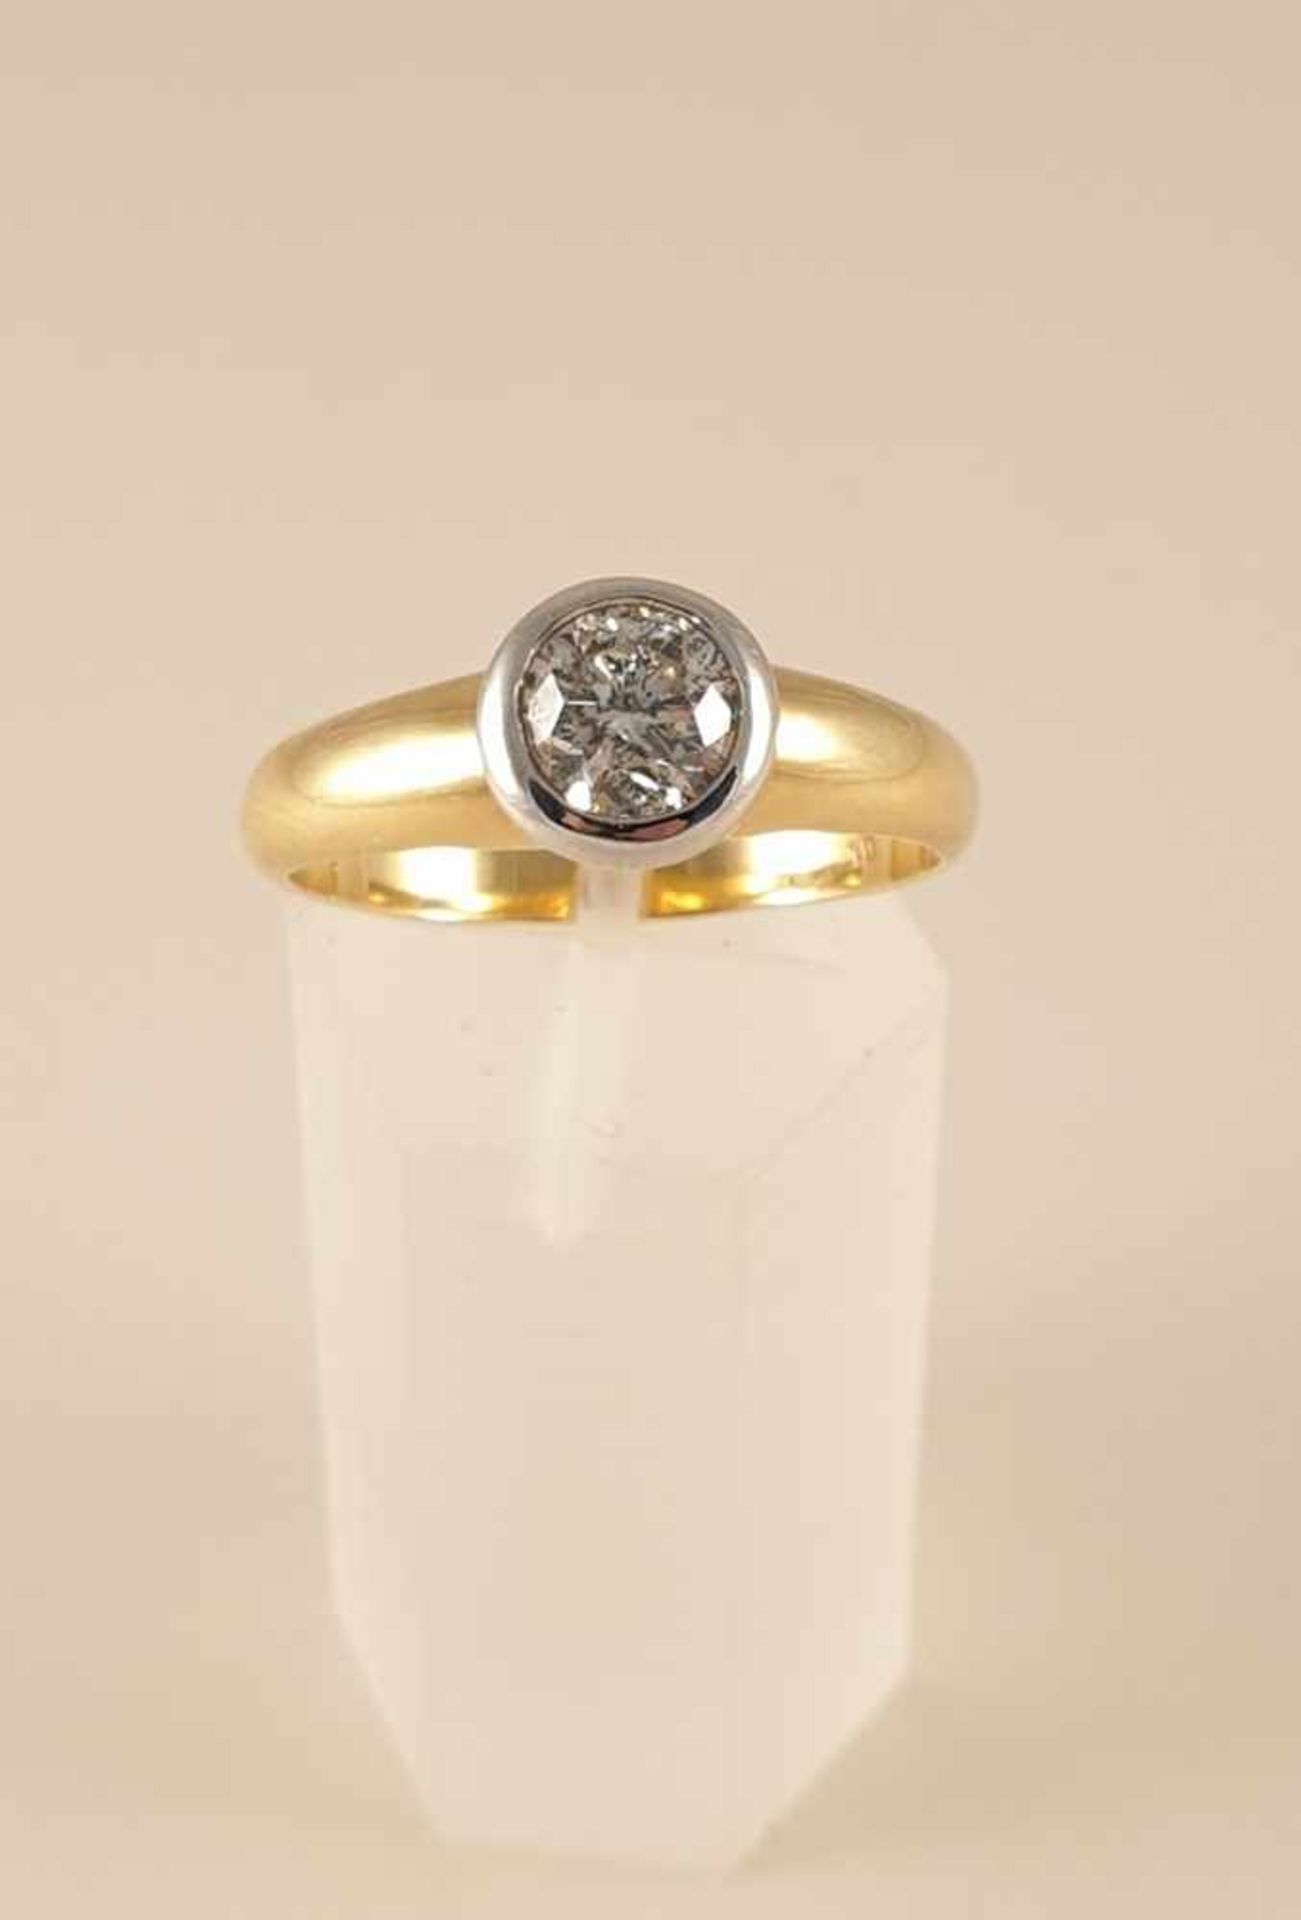 Diamant Solitär Ring, Diamant 1ct. Gold 750 , RW63 , Gewicht: 6,6g , Guter Farb- niedriger